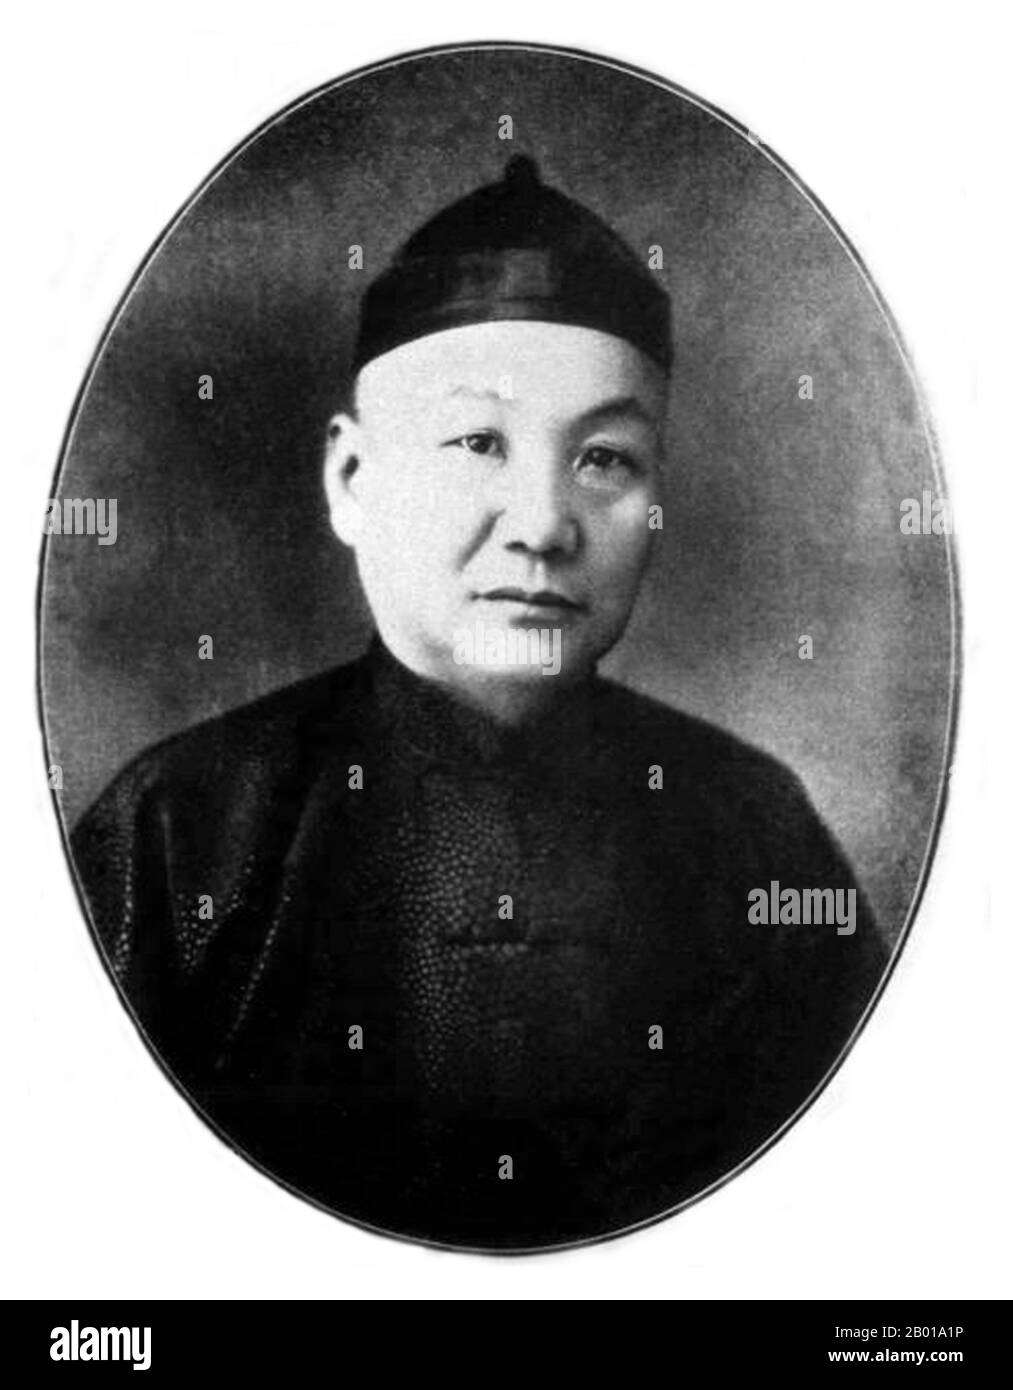 Cina: Zhang Xiaolin, Green Gang mobster e Shanghai godfather (1877-1940), c.. 1920. Zhang Xiaolin era uno dei "tre Padri di Shanghai" e, insieme a Du Yuesheng, era un leader della Shanghai Green Gang. Nel 1939, con la cattura giapponese di Shanghai, fu nominato governatore burattino di Zhejiang. Fu assassinato nel 1940. Foto Stock